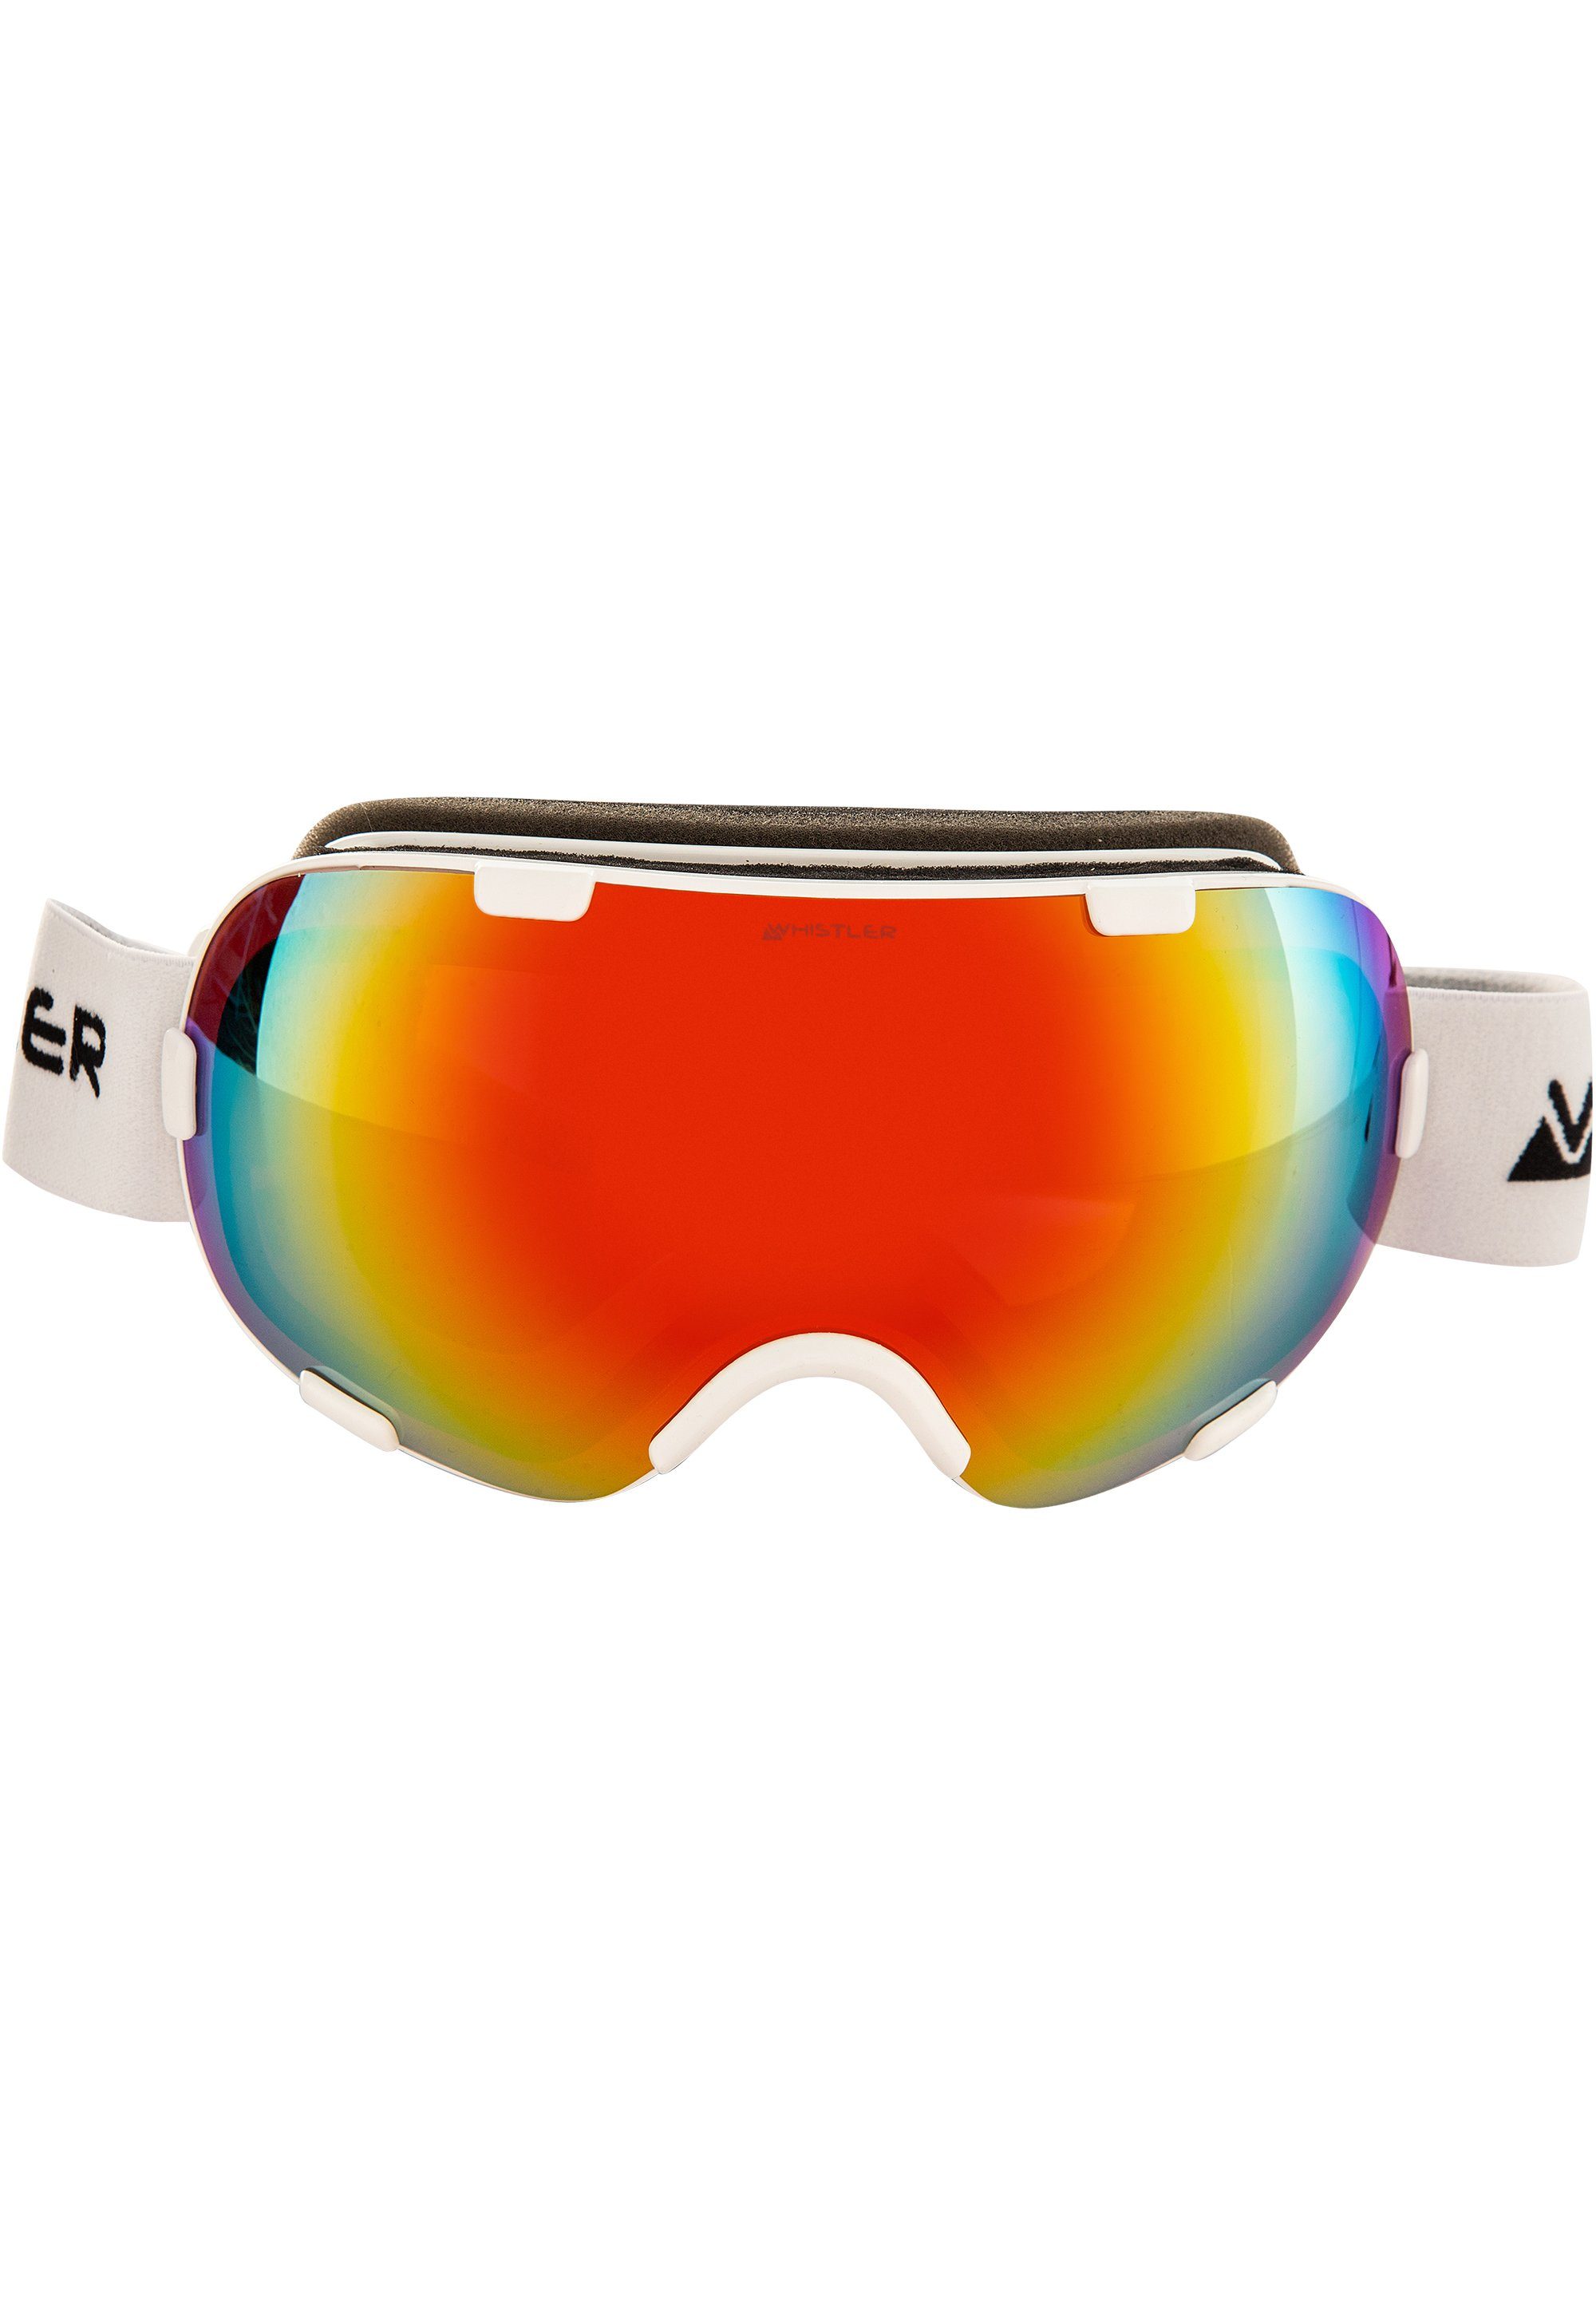 WHISTLER hochwertiger mit Anti-Beschlag-Beschichtung Skibrille Goggle, WS6000 Ski